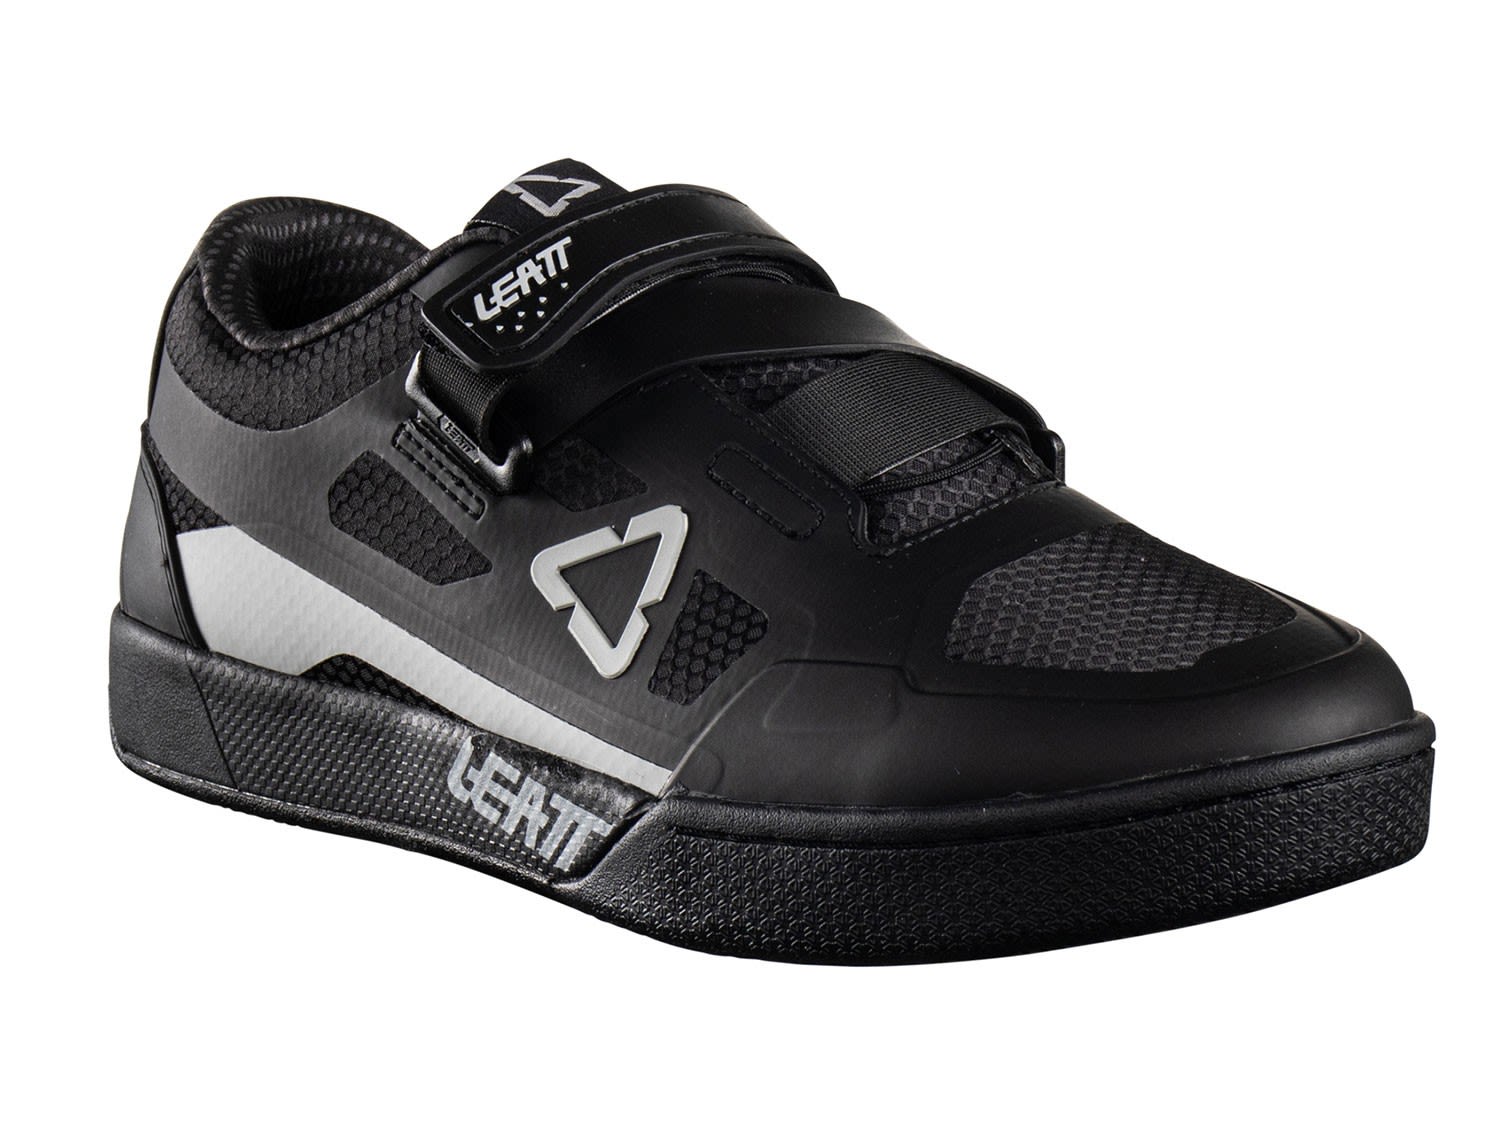 Leatt 5-0 Klickpedal Shoe Schwarz- Freeride- Grsse EU 38-5 - Farbe Black unter Leatt